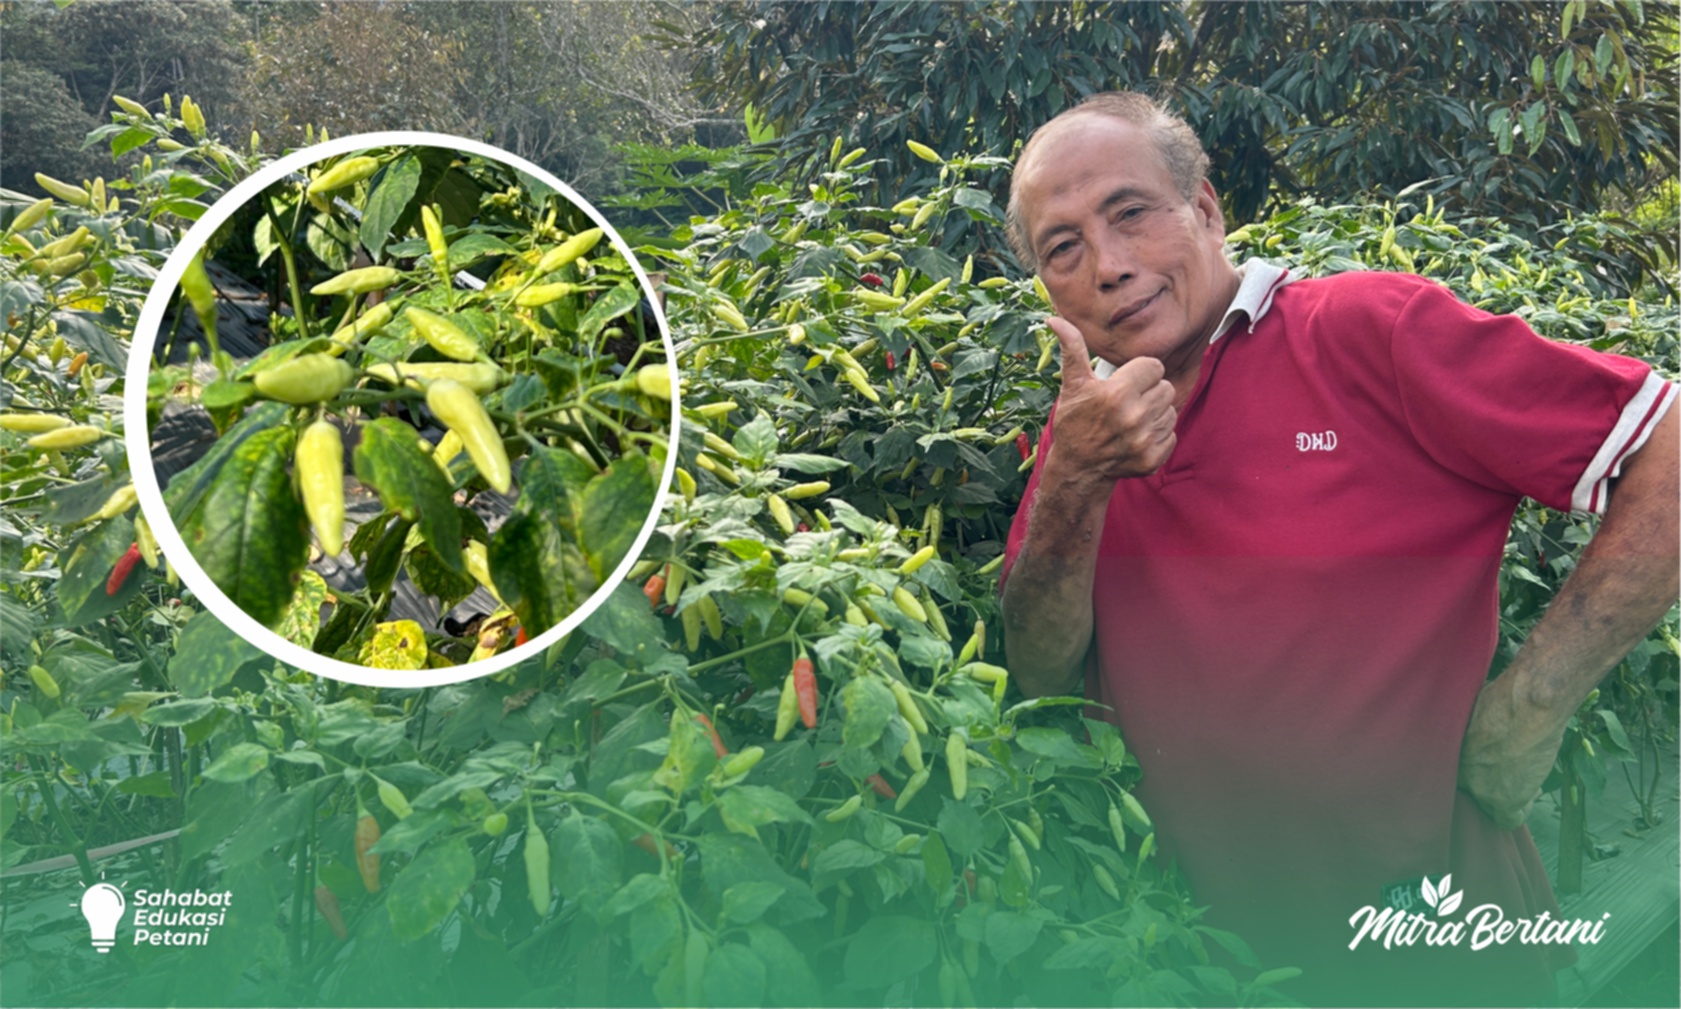 Budidaya Cabai : Dari Gedung ke Ladang Hijau, Mantan Direktur Utama Perusahaan Mekah Pulang Bertani 